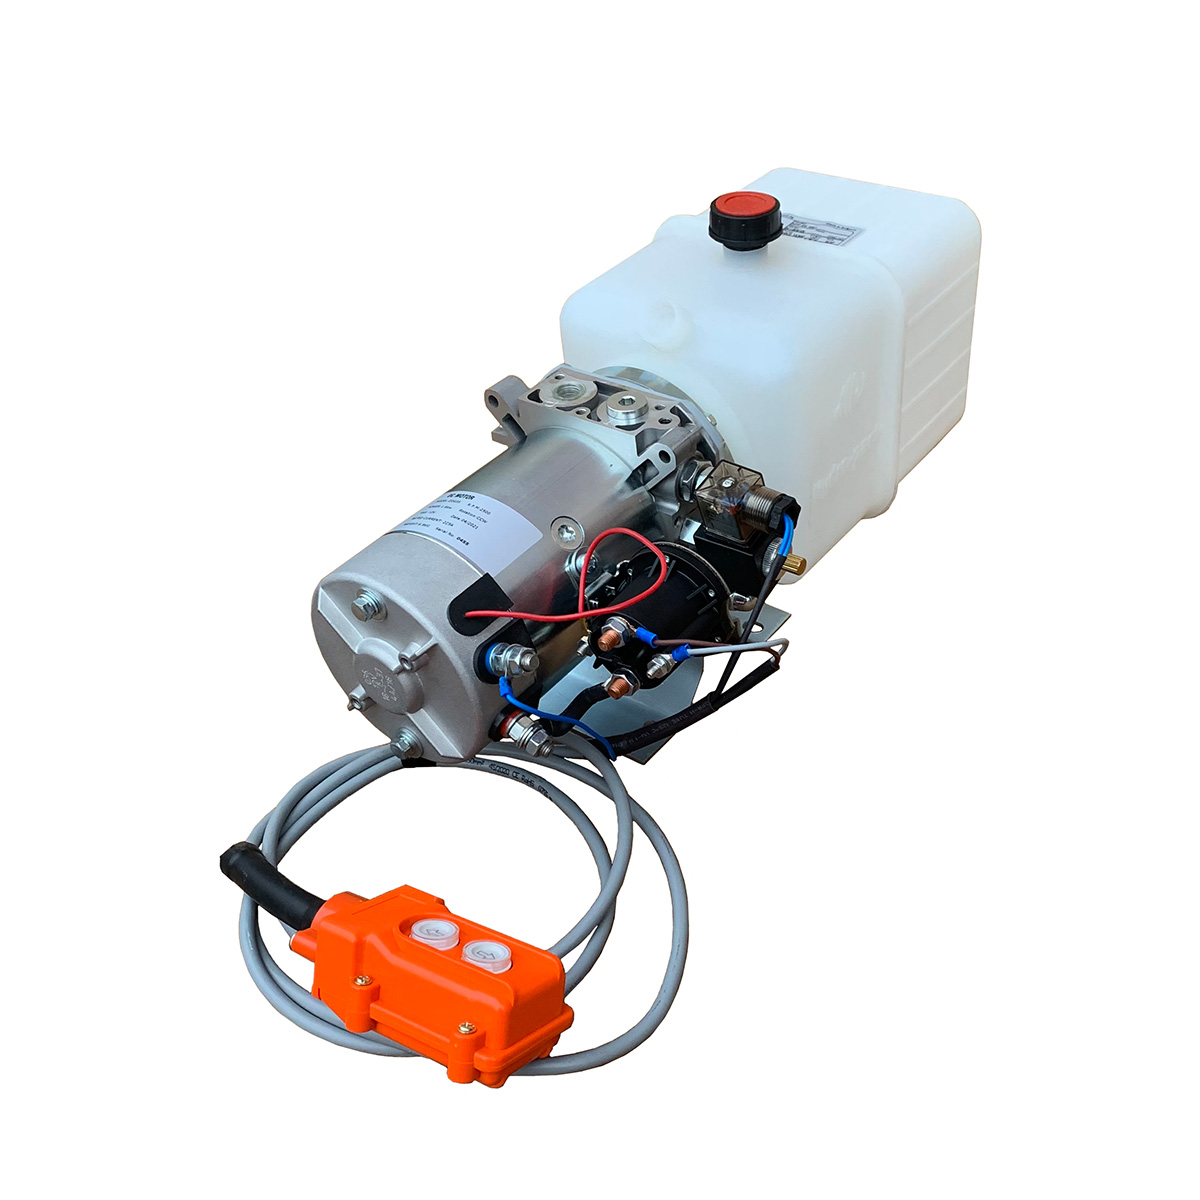 Мини гидростанция подъёма кузова самосвалов HPP/D5-1051 (1.6 кВт., 12 .